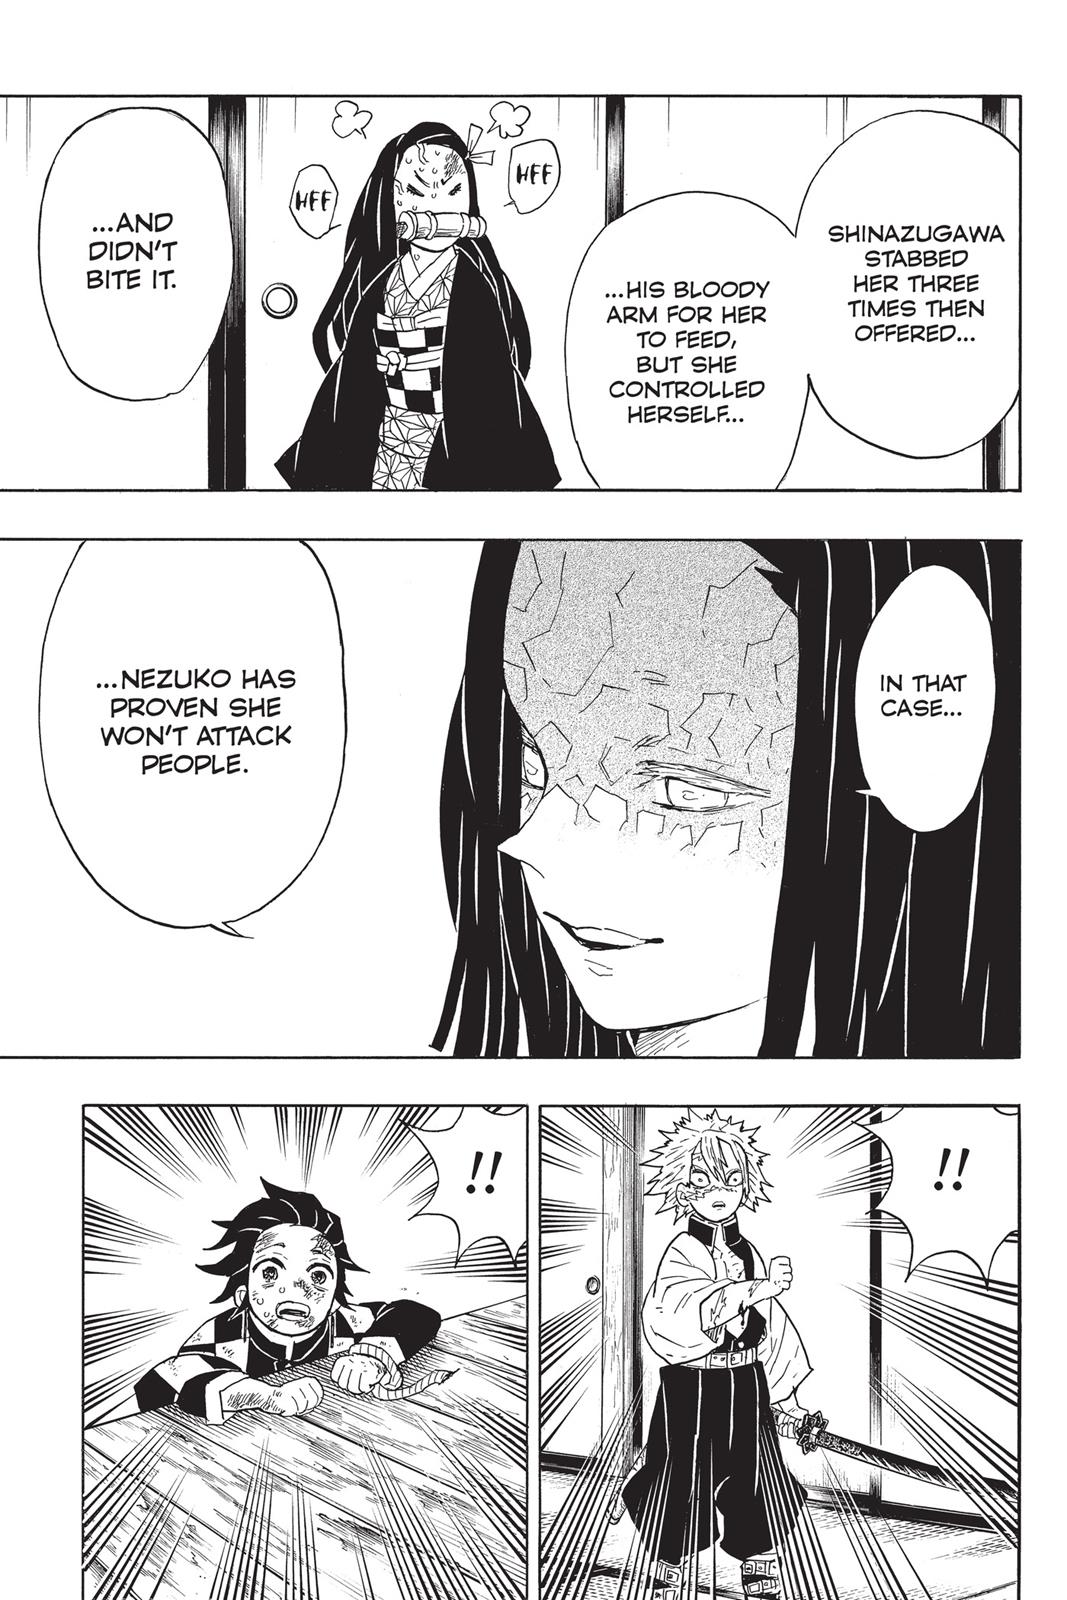 Demon Slayer Manga Manga Chapter - 47 - image 10